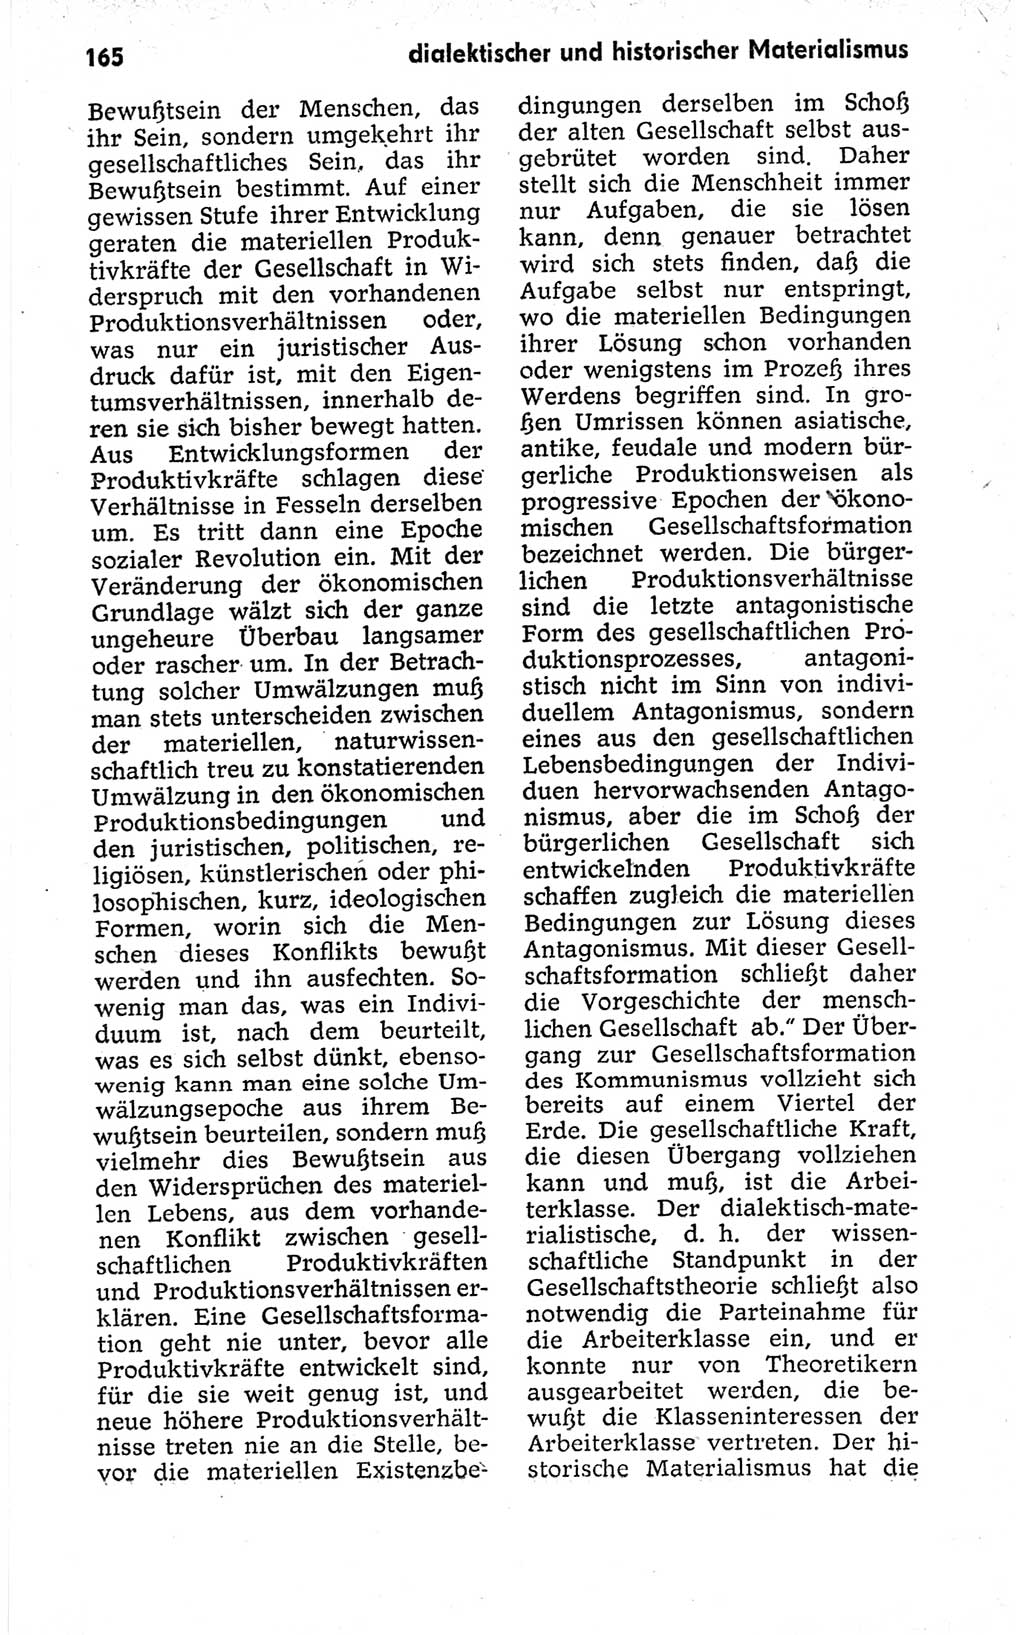 Kleines politisches Wörterbuch [Deutsche Demokratische Republik (DDR)] 1973, Seite 165 (Kl. pol. Wb. DDR 1973, S. 165)